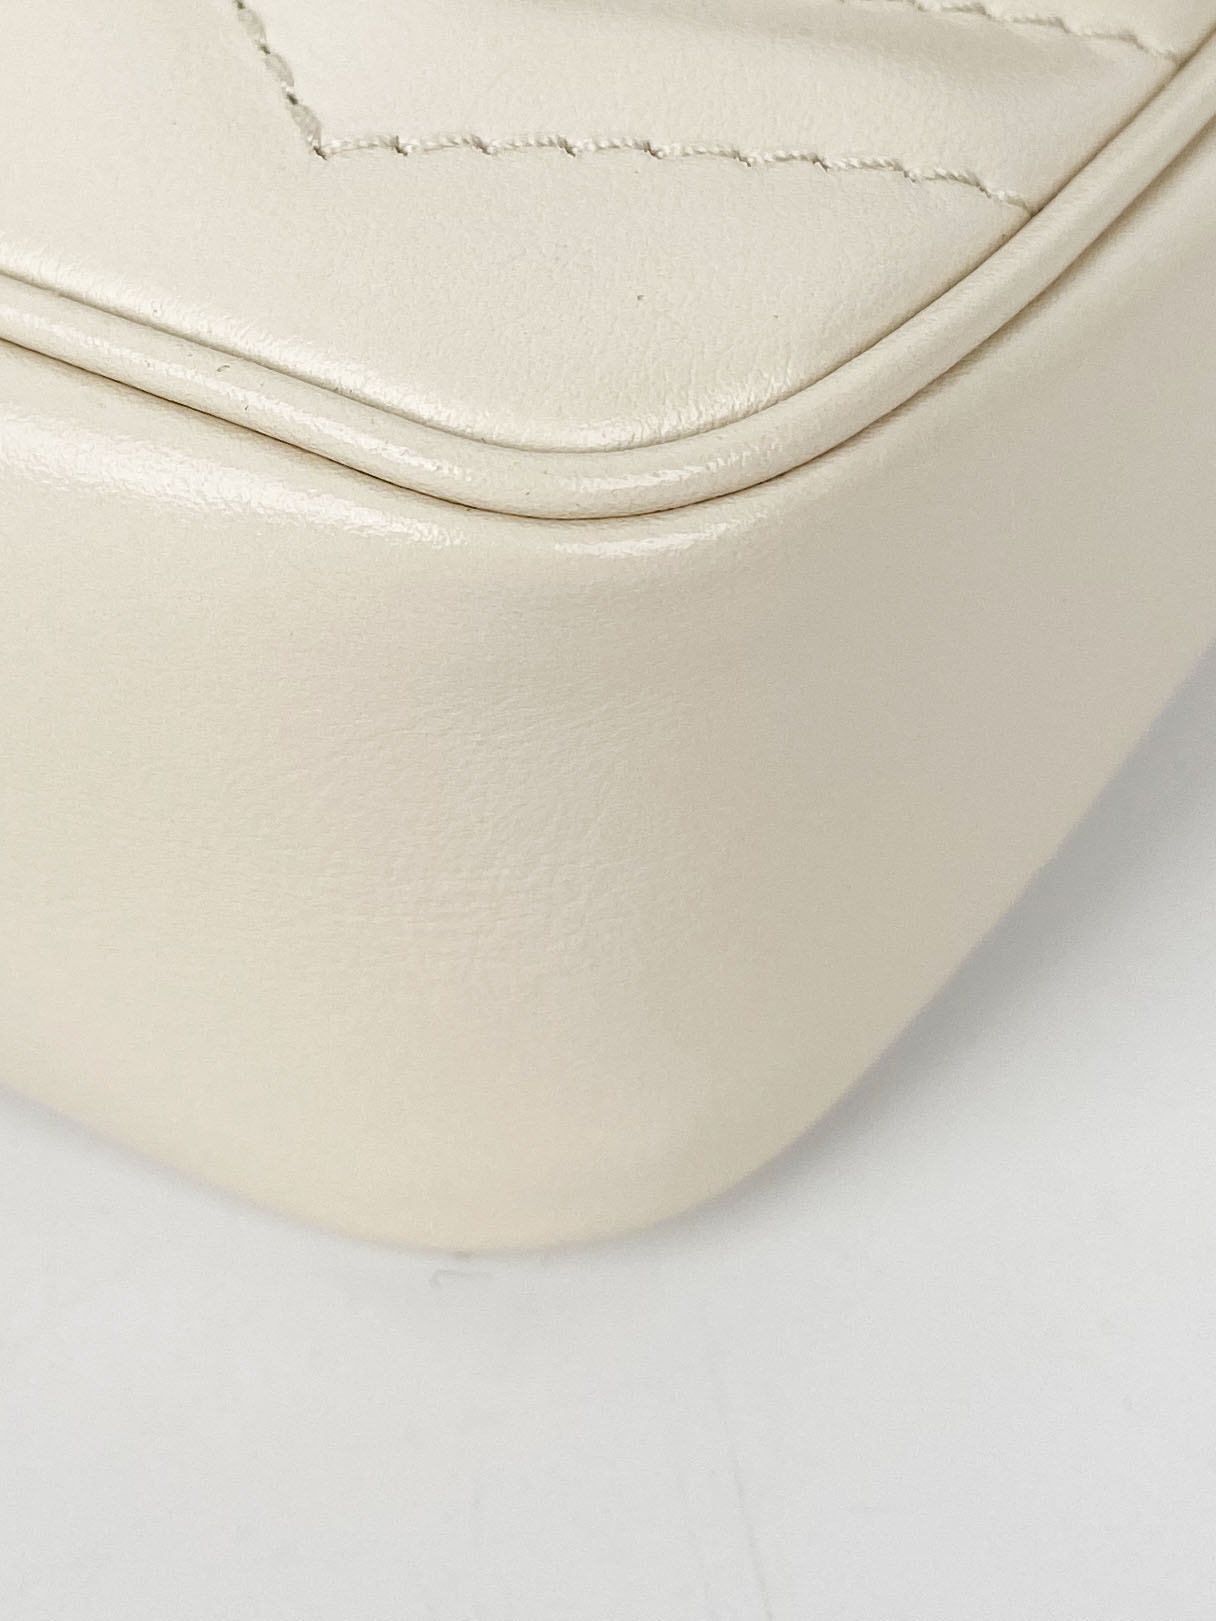 Gucci Super Mini White Marmont Bag